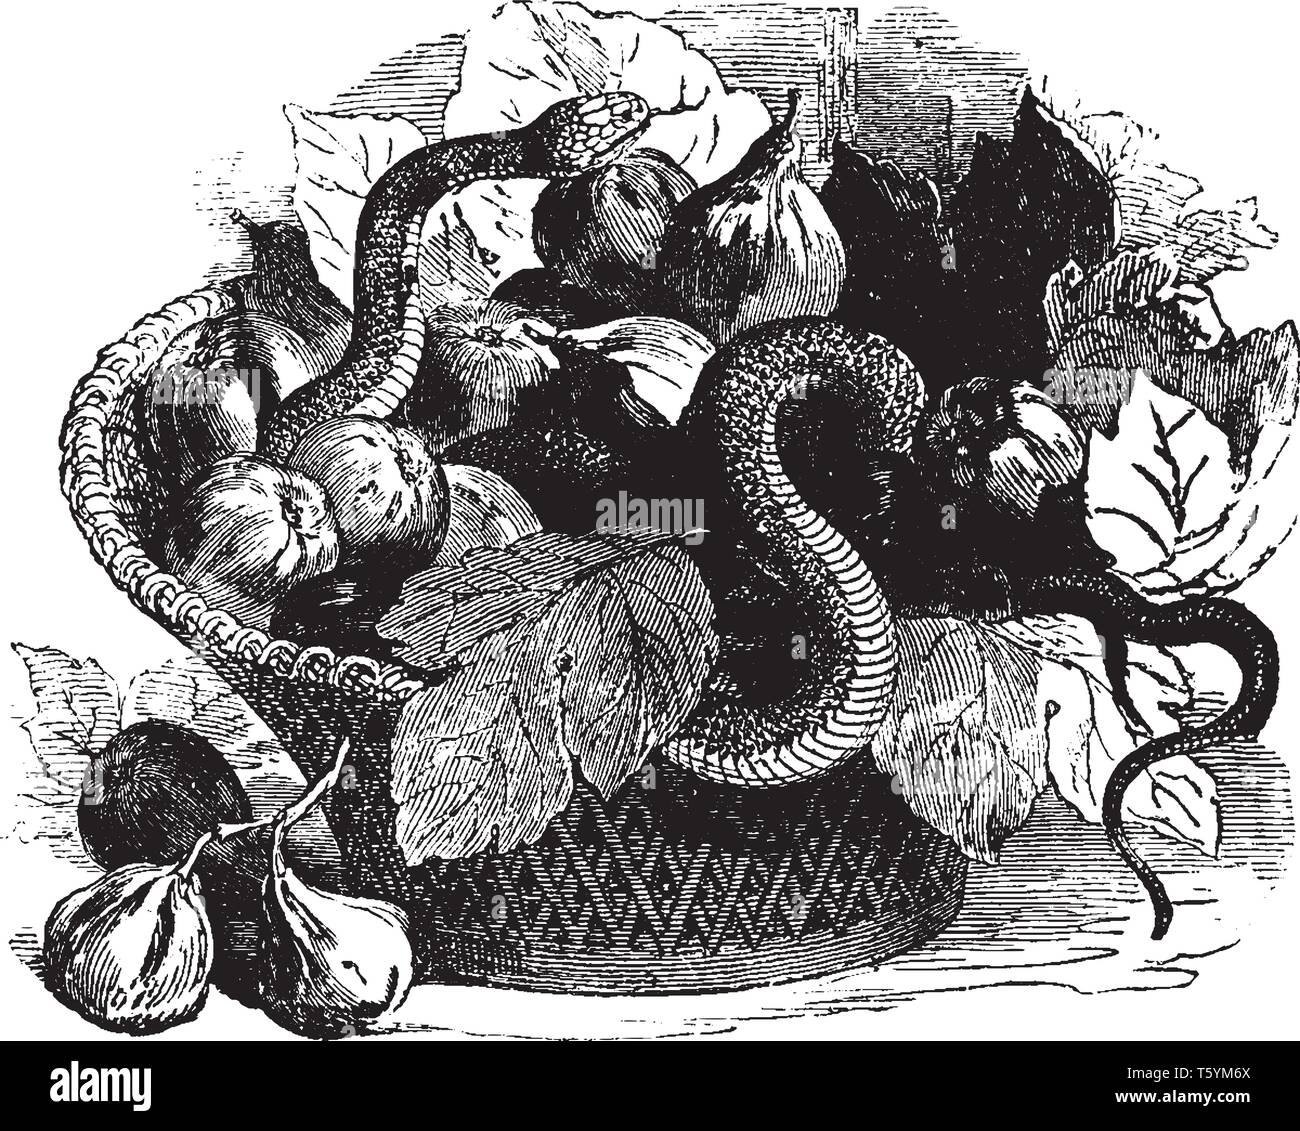 Asp è una piccola specie di serpente venemous trovati nelle Alpi Europee, vintage disegno della linea di incisione o illustrazione. Illustrazione Vettoriale